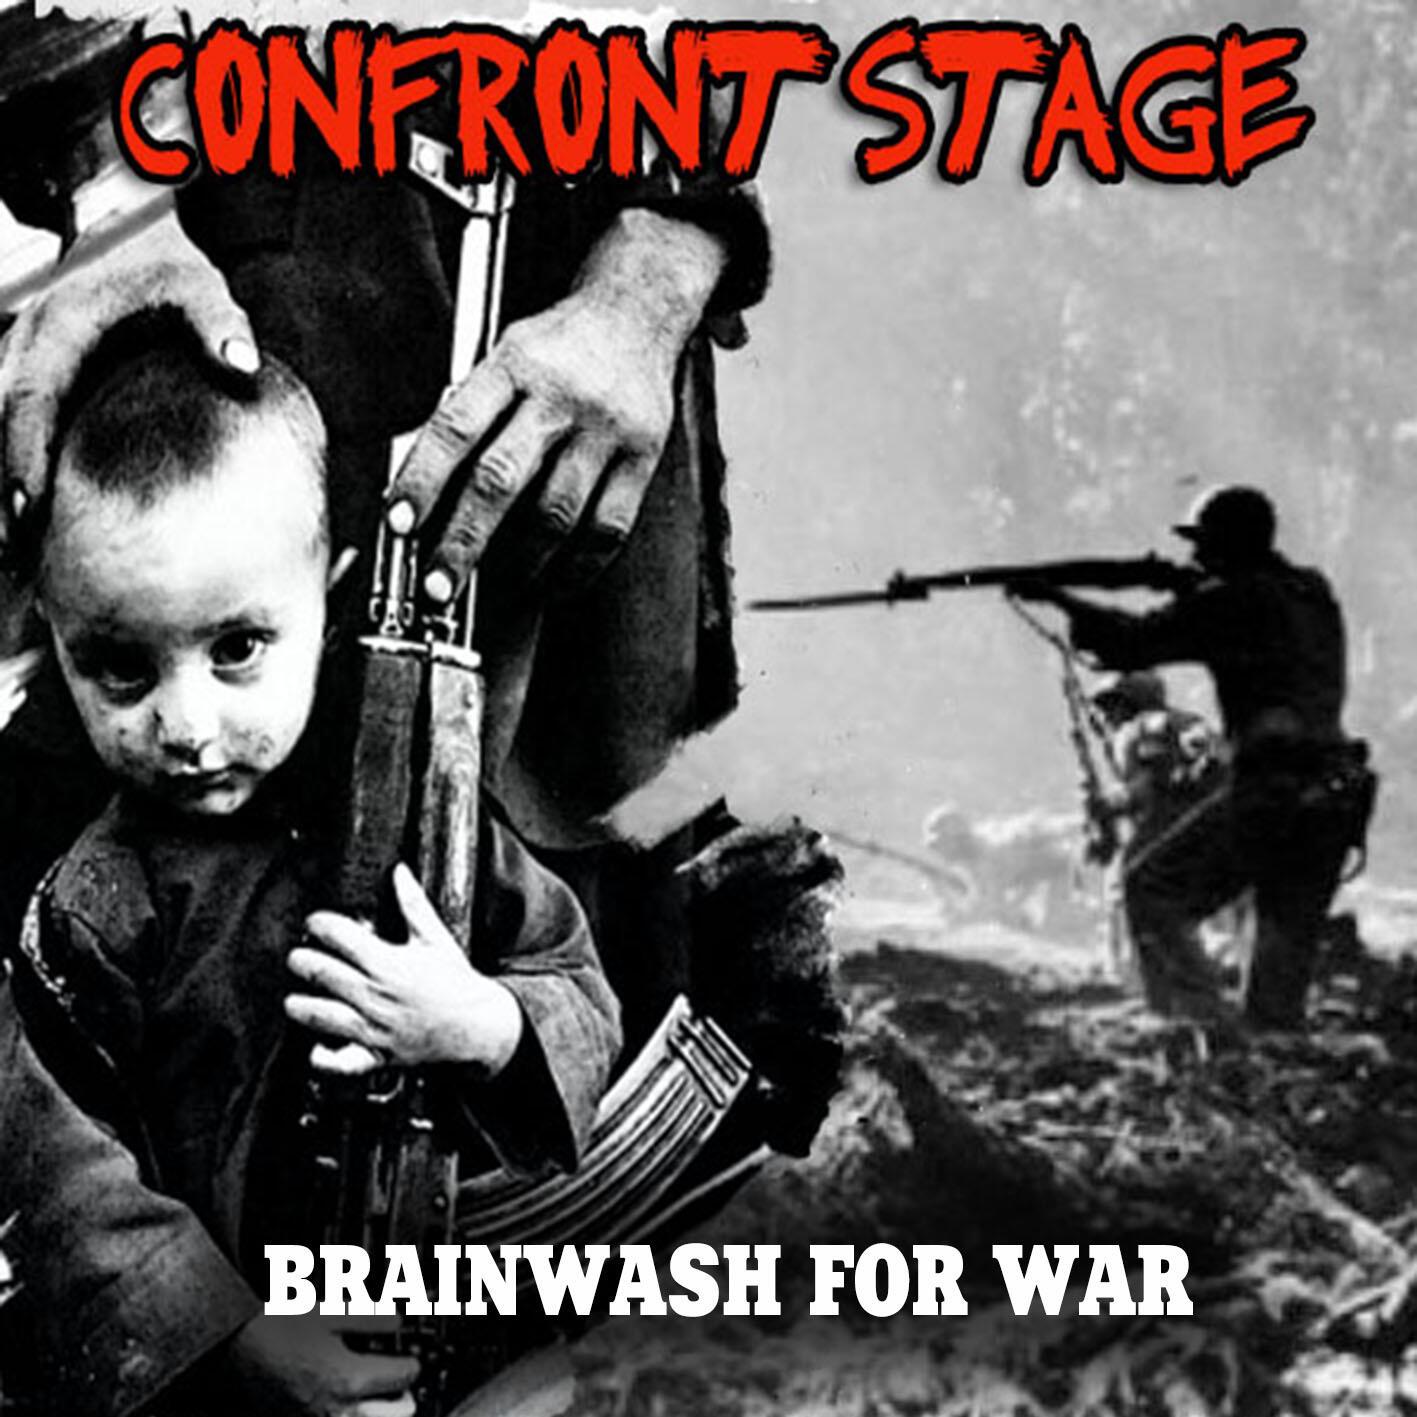 Brainwash for war